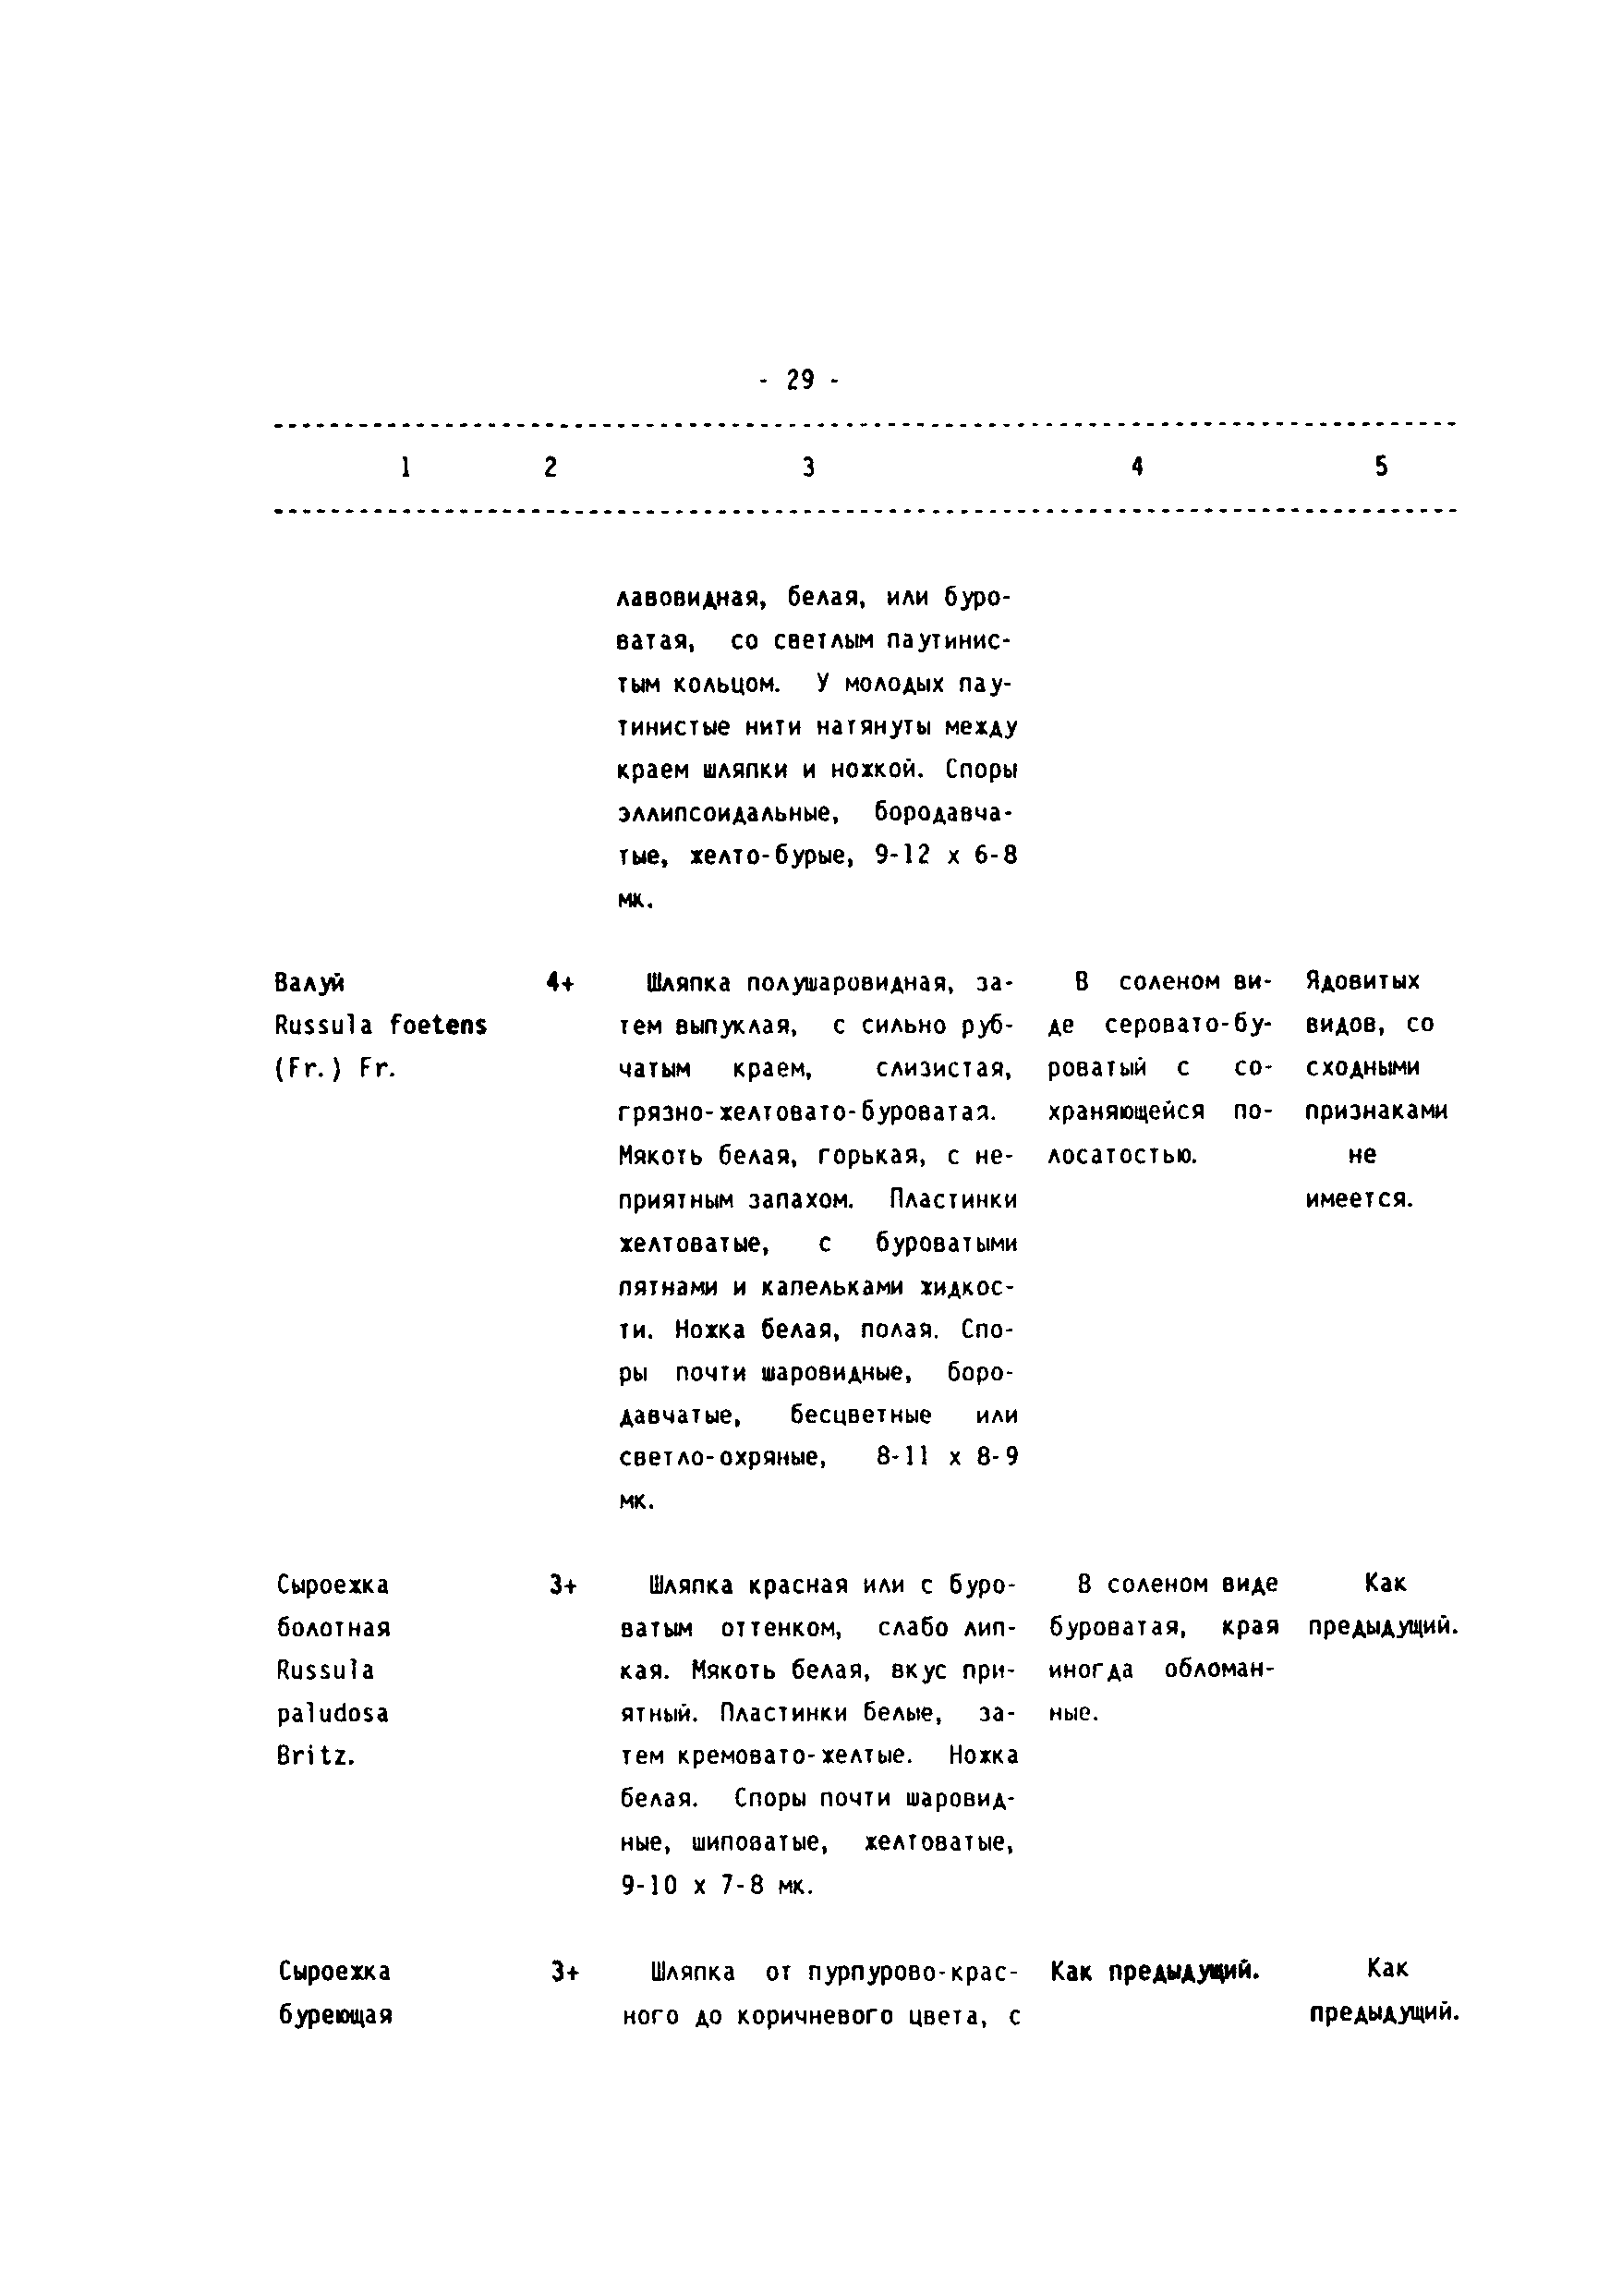 СП 2.3.4.009-93